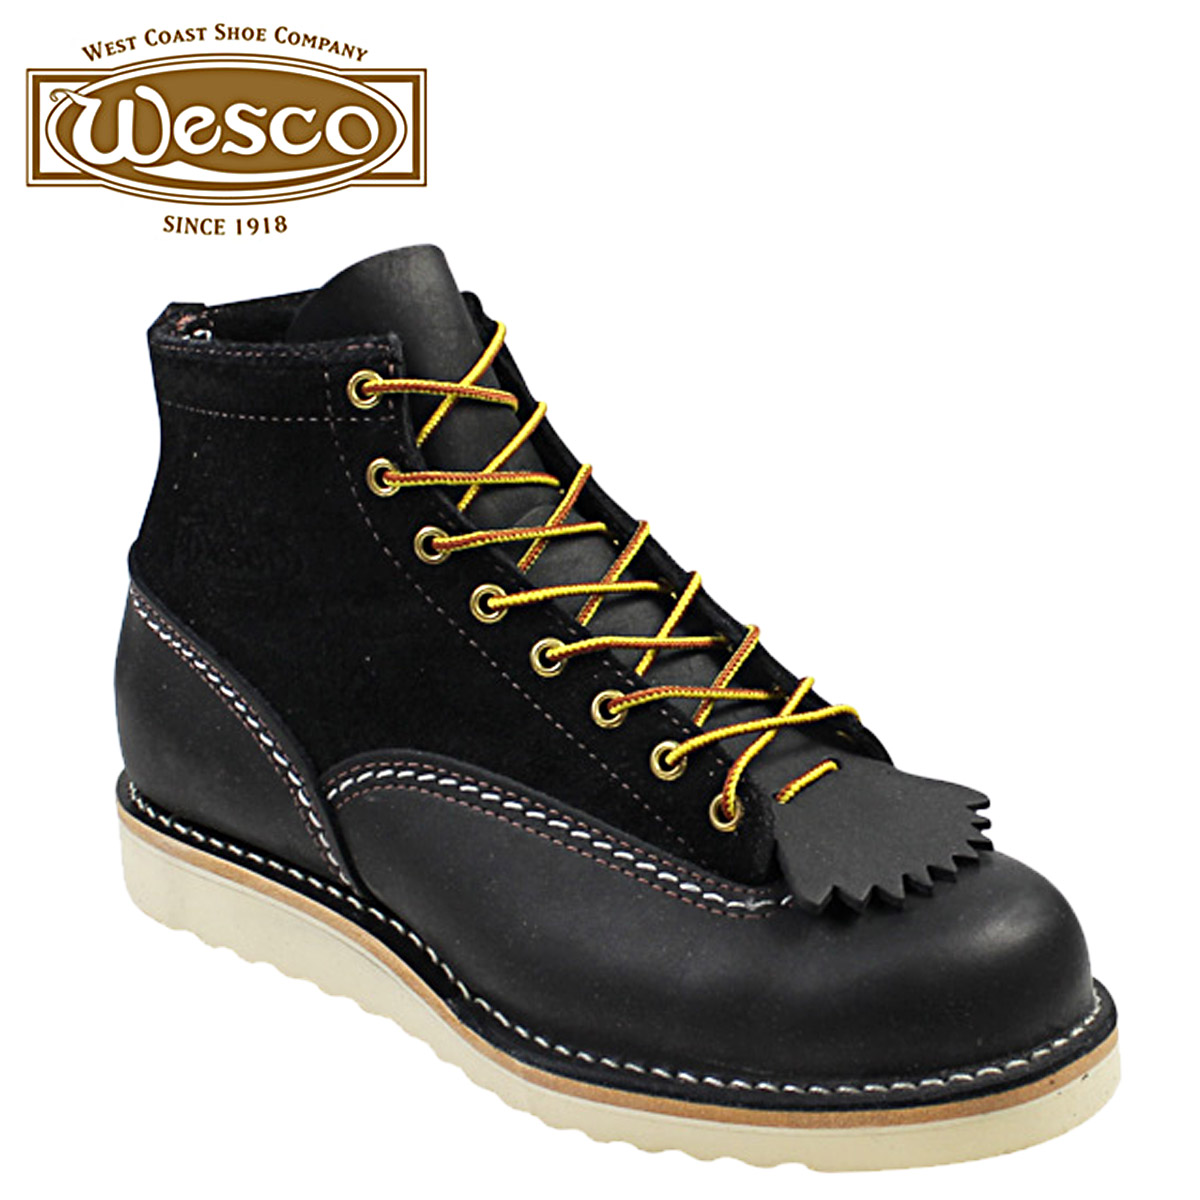 wesco shoes